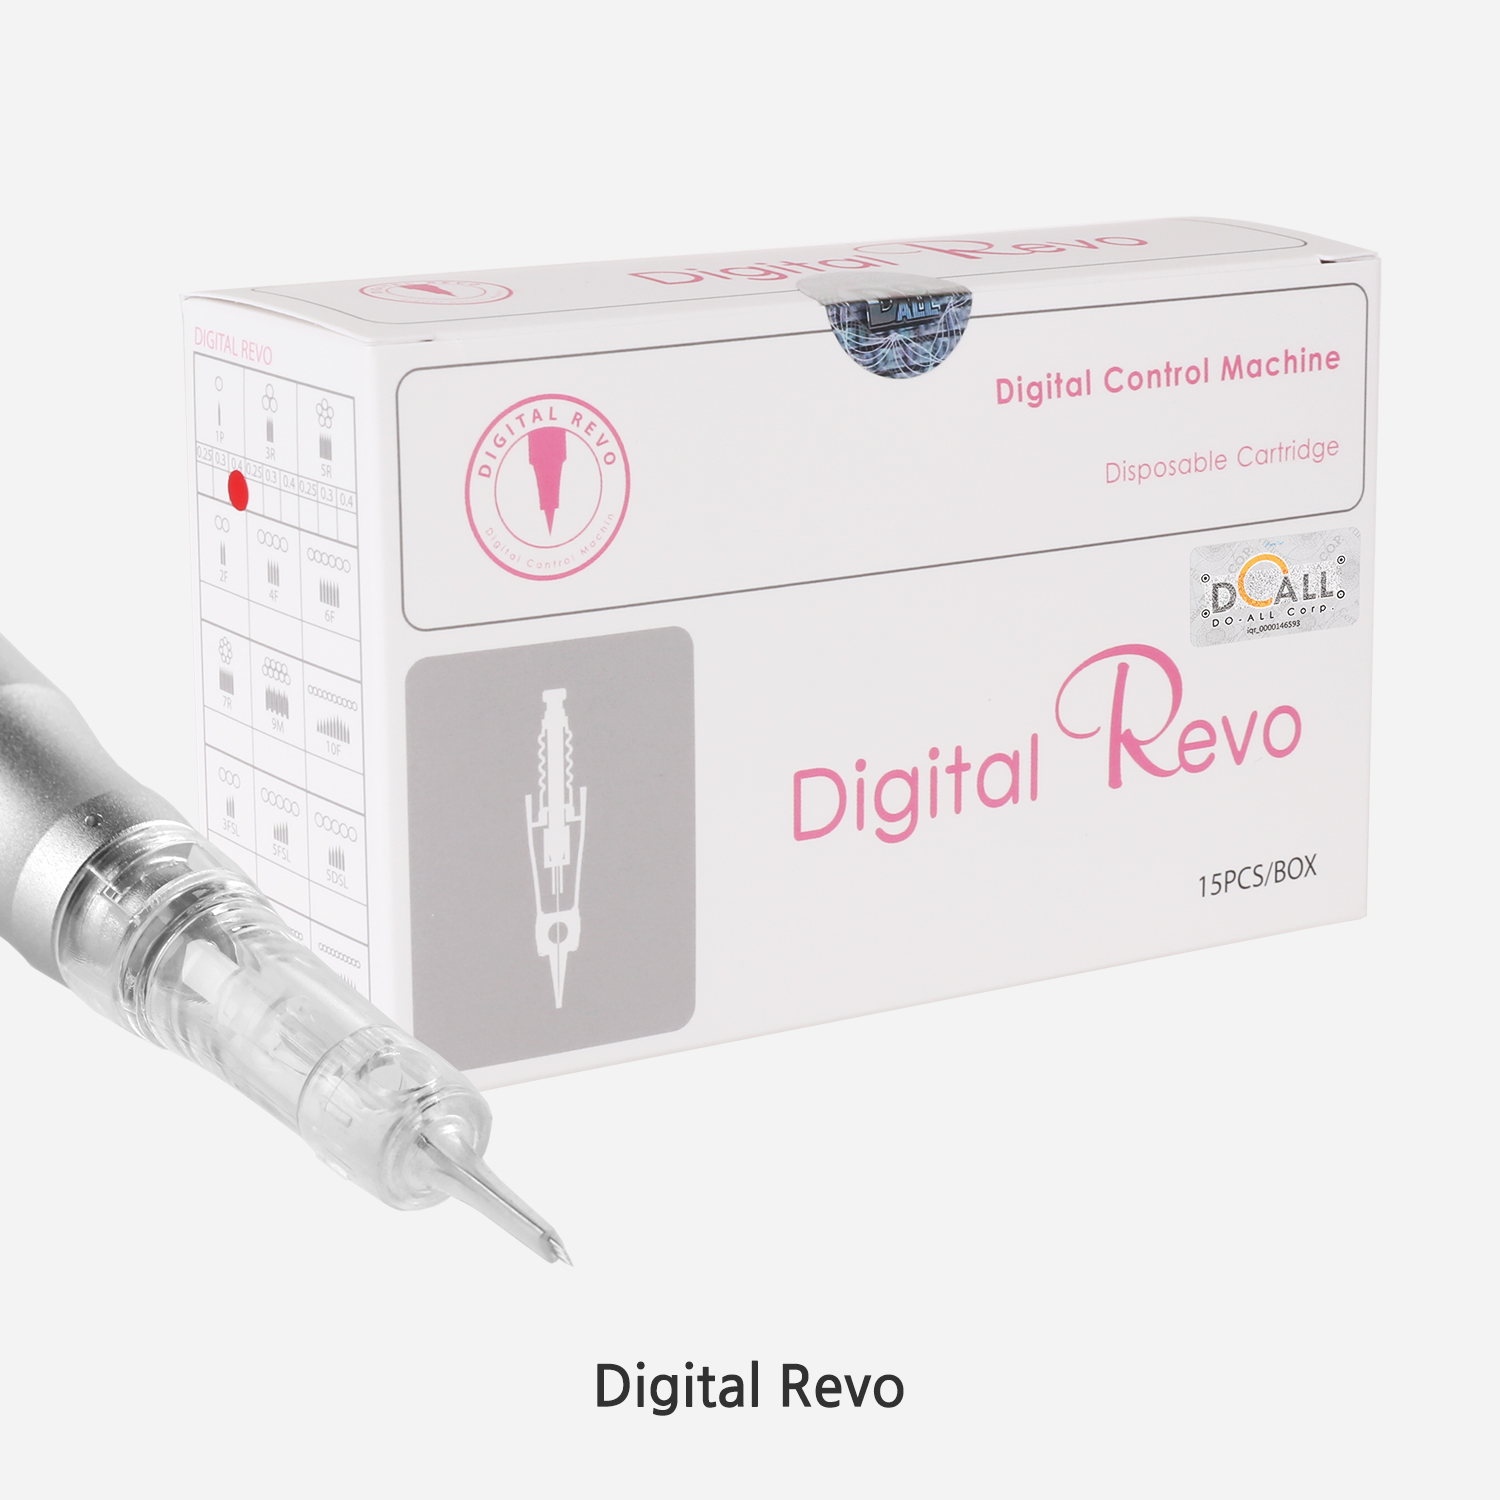 Digital Revo (15pcs/Box)